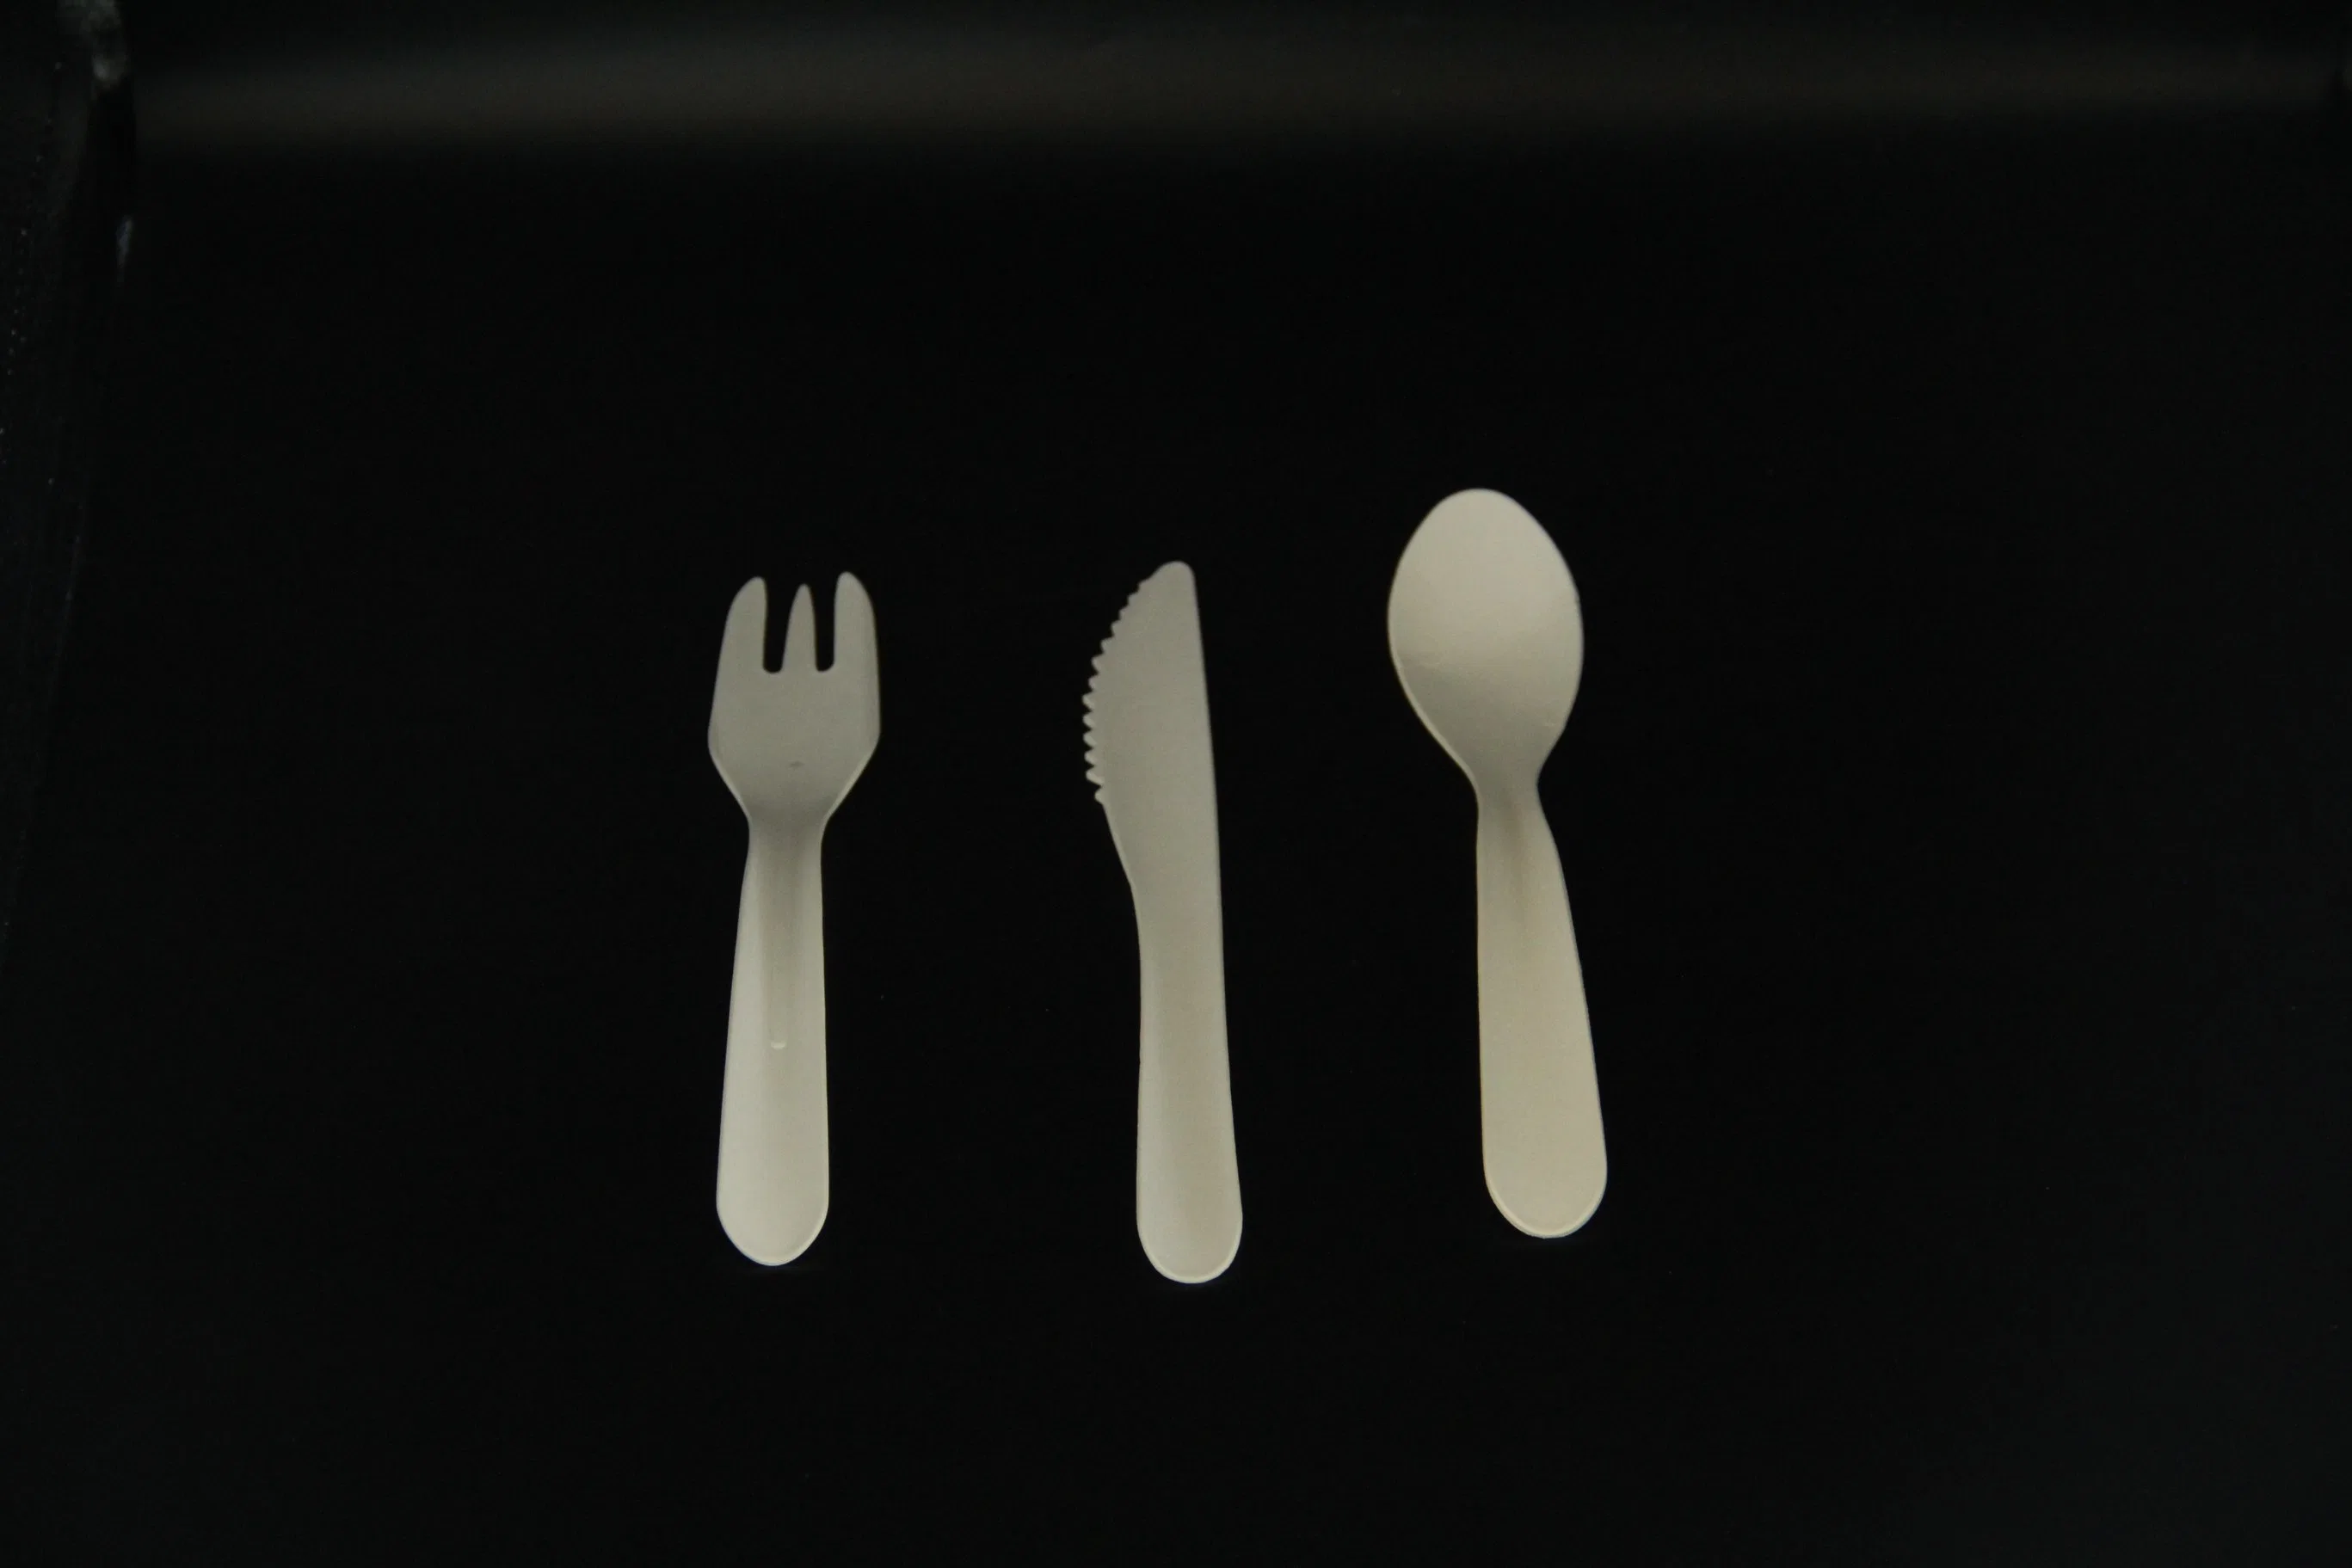 أدوات المائدة المصنوعة من ورق الخيزران التي يمكن التخلص منها مجموعة الشوكة القابلة للتحلل البيولوجي والملعقة سكين تعيين